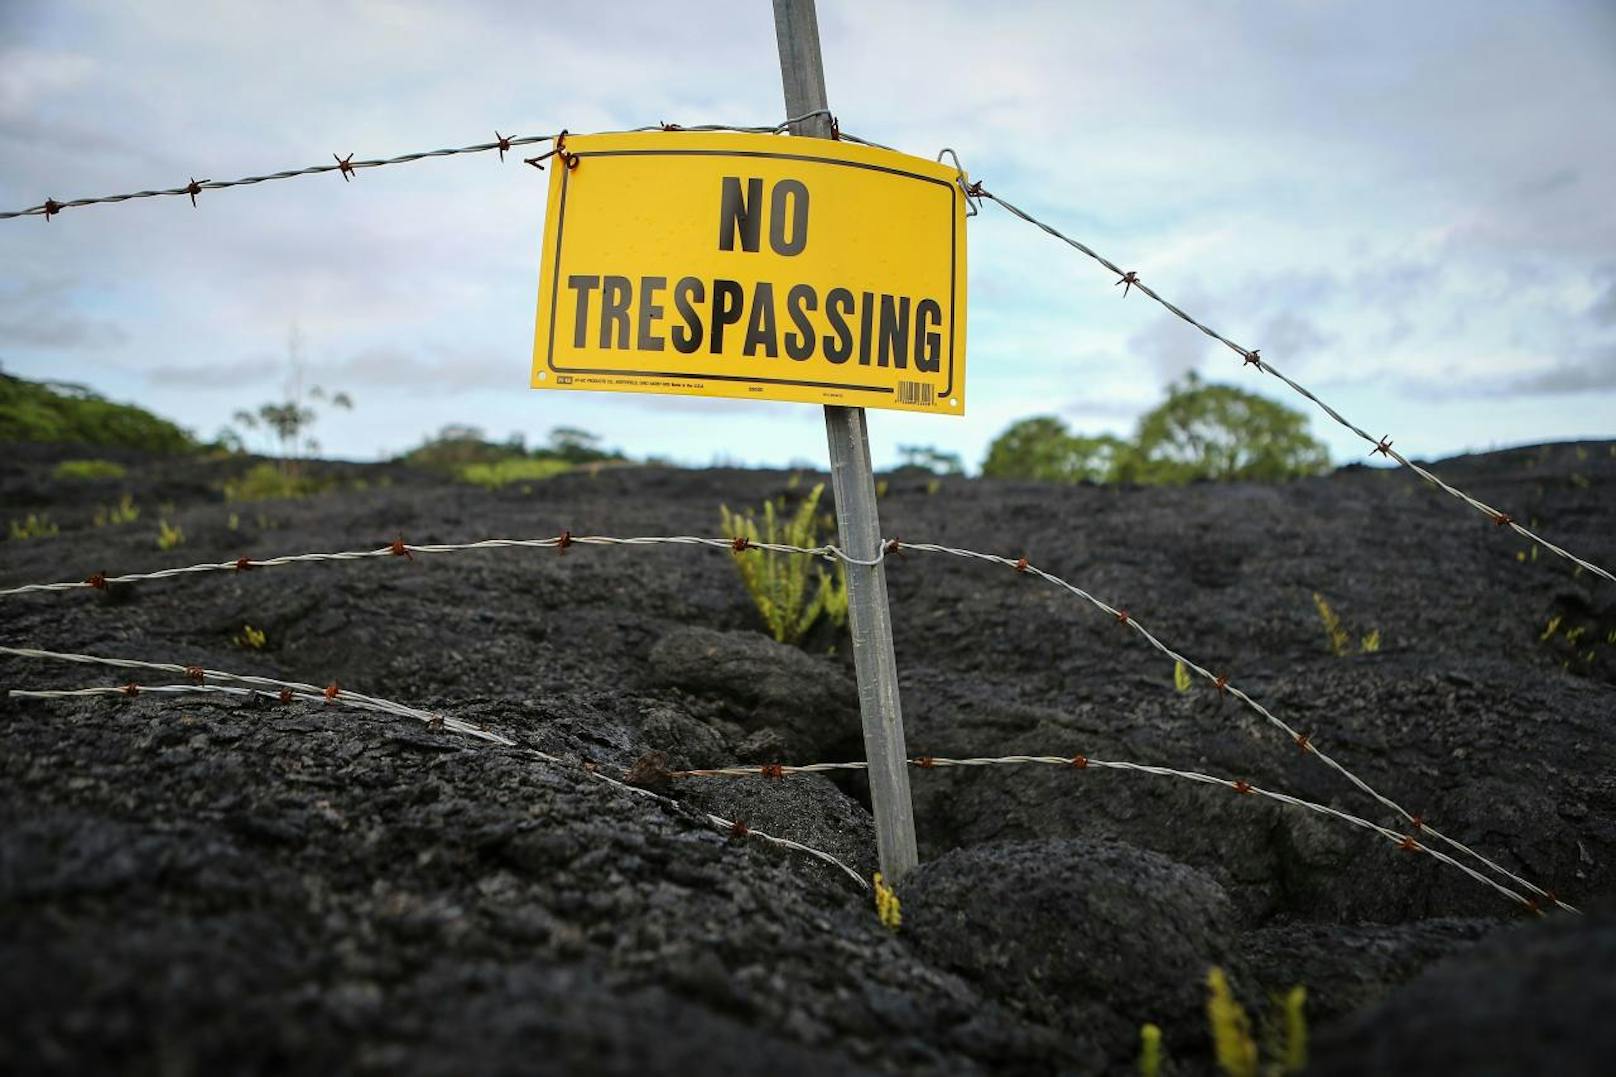 Der Vulkan Kilauea auf Hawaii ist seit Anfang Mai gefährlich aktiv. Tausende Bewohner mussten schon evakuiert werden, Häuser und Straßen von Lavaströmen zerstört.